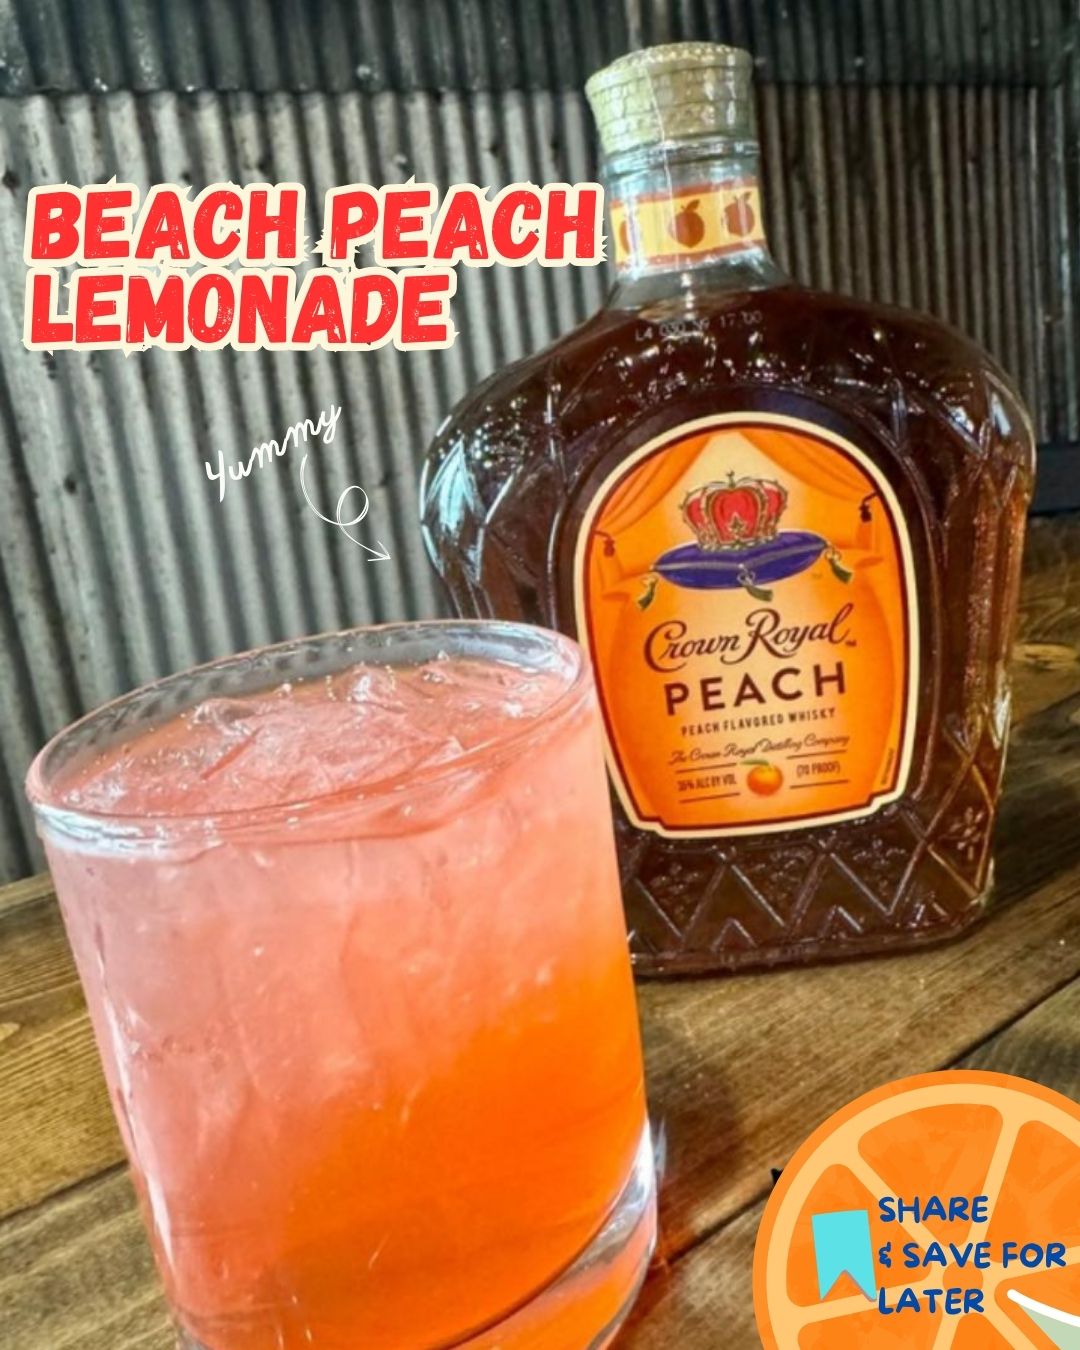 Beach Peach Lemonade: A Refreshing Summer Cocktail